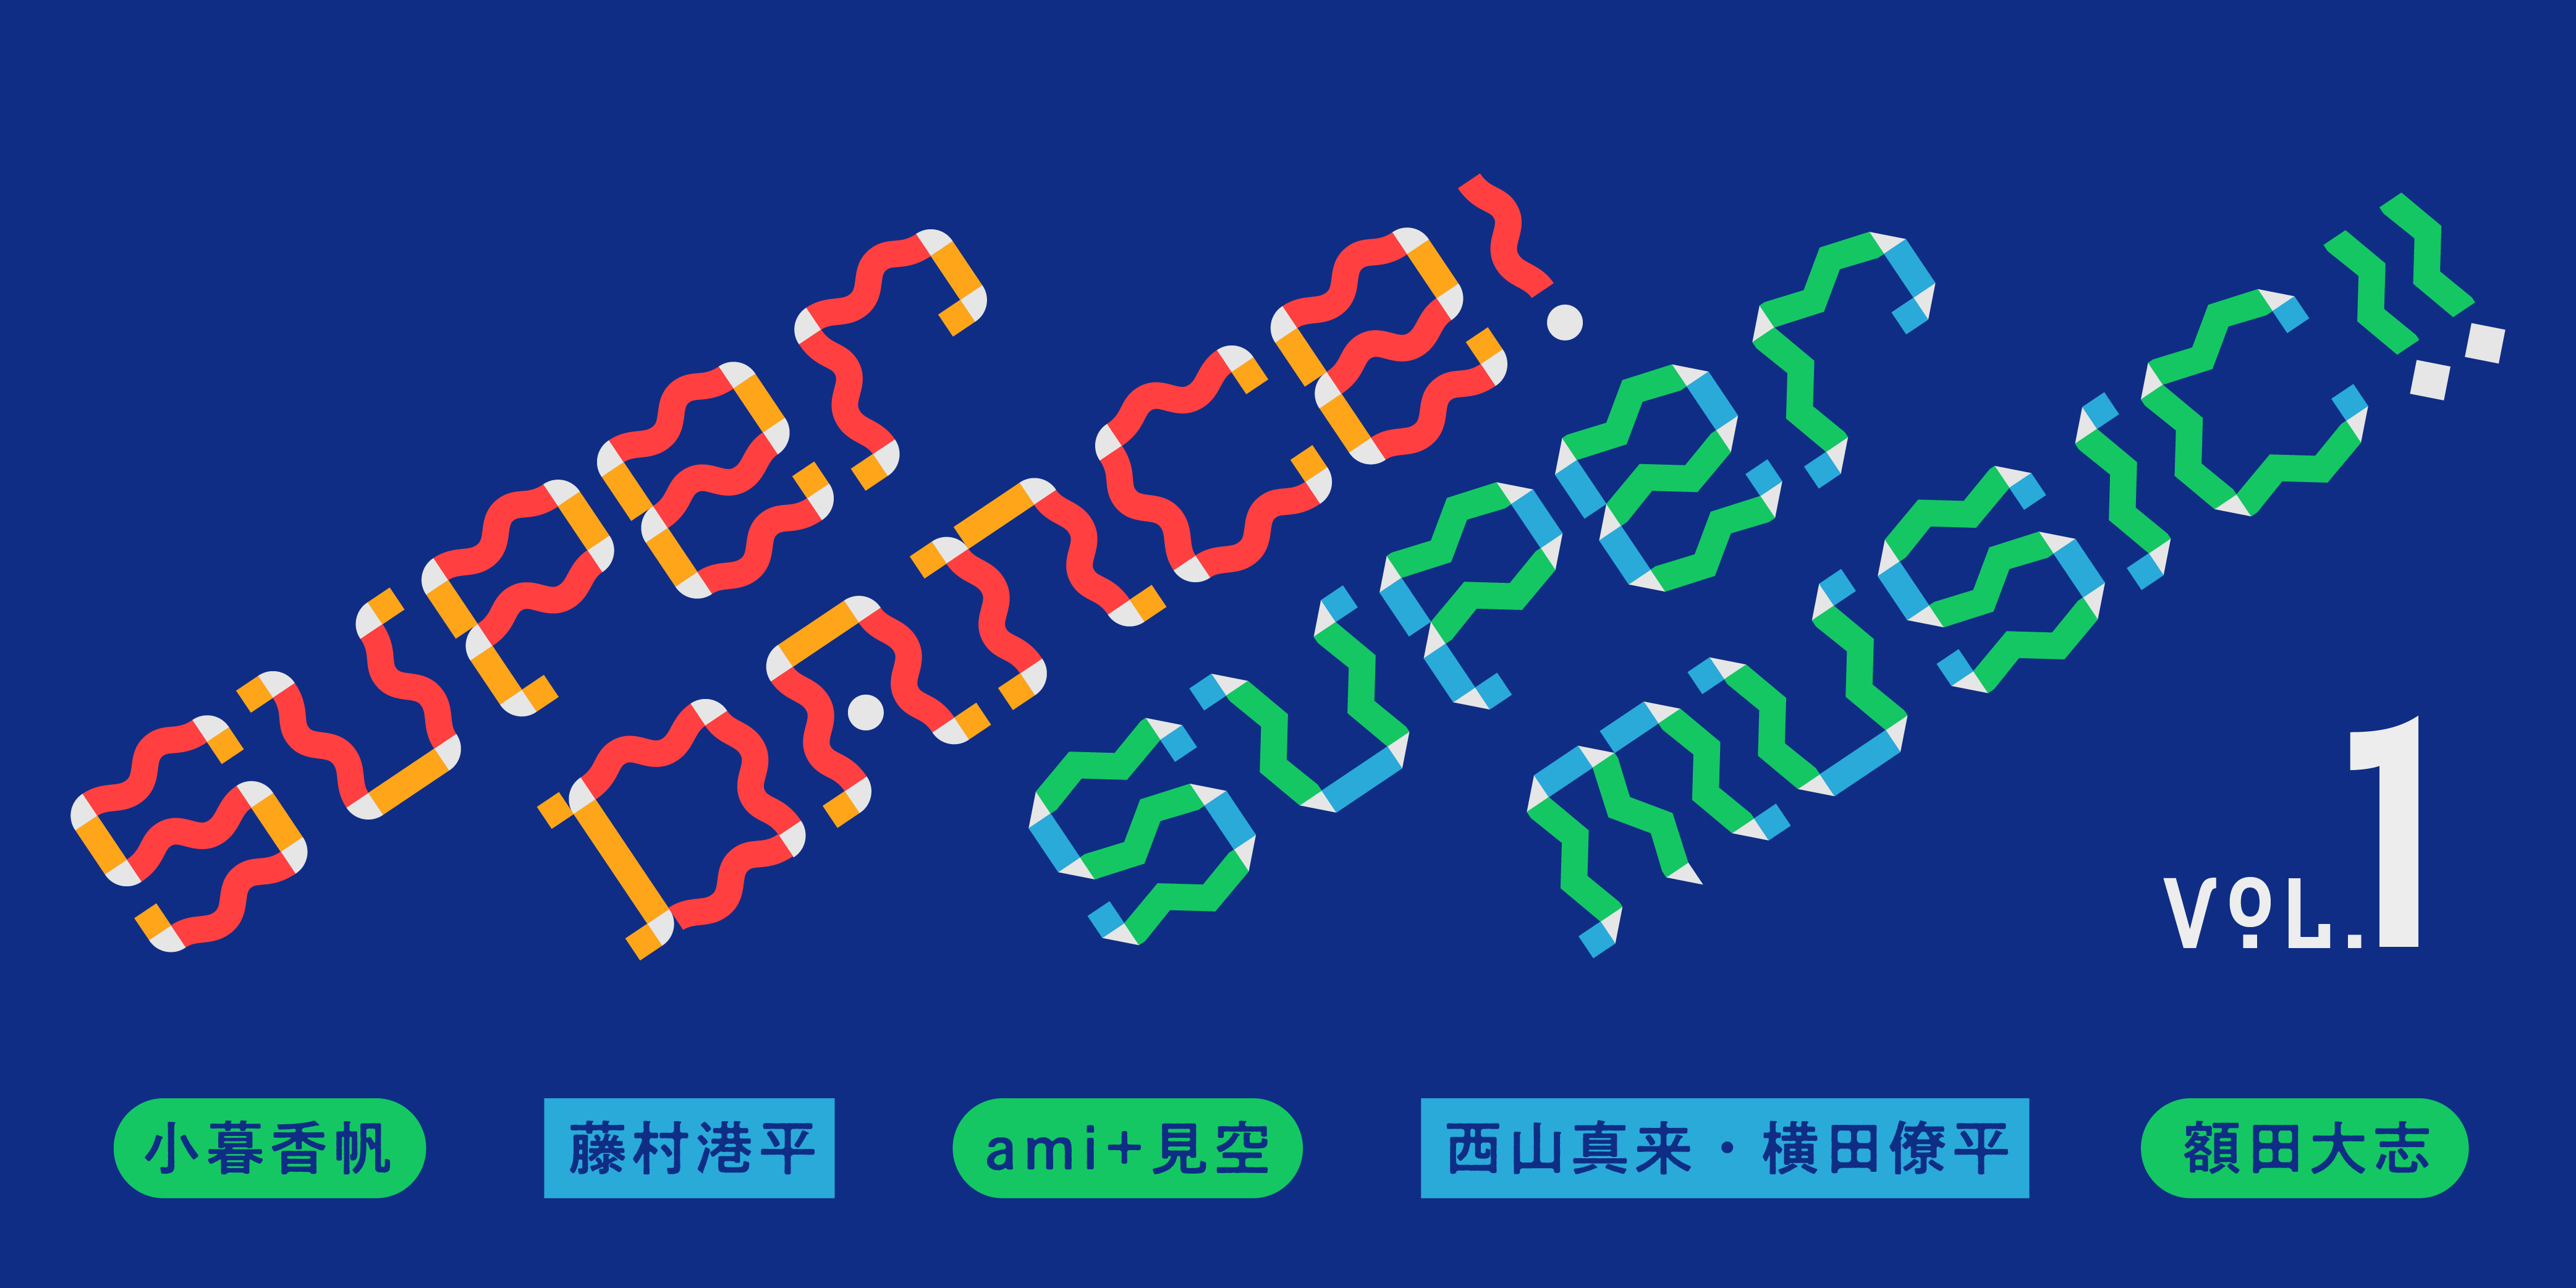 Super Dance! Super Music!! vol.1